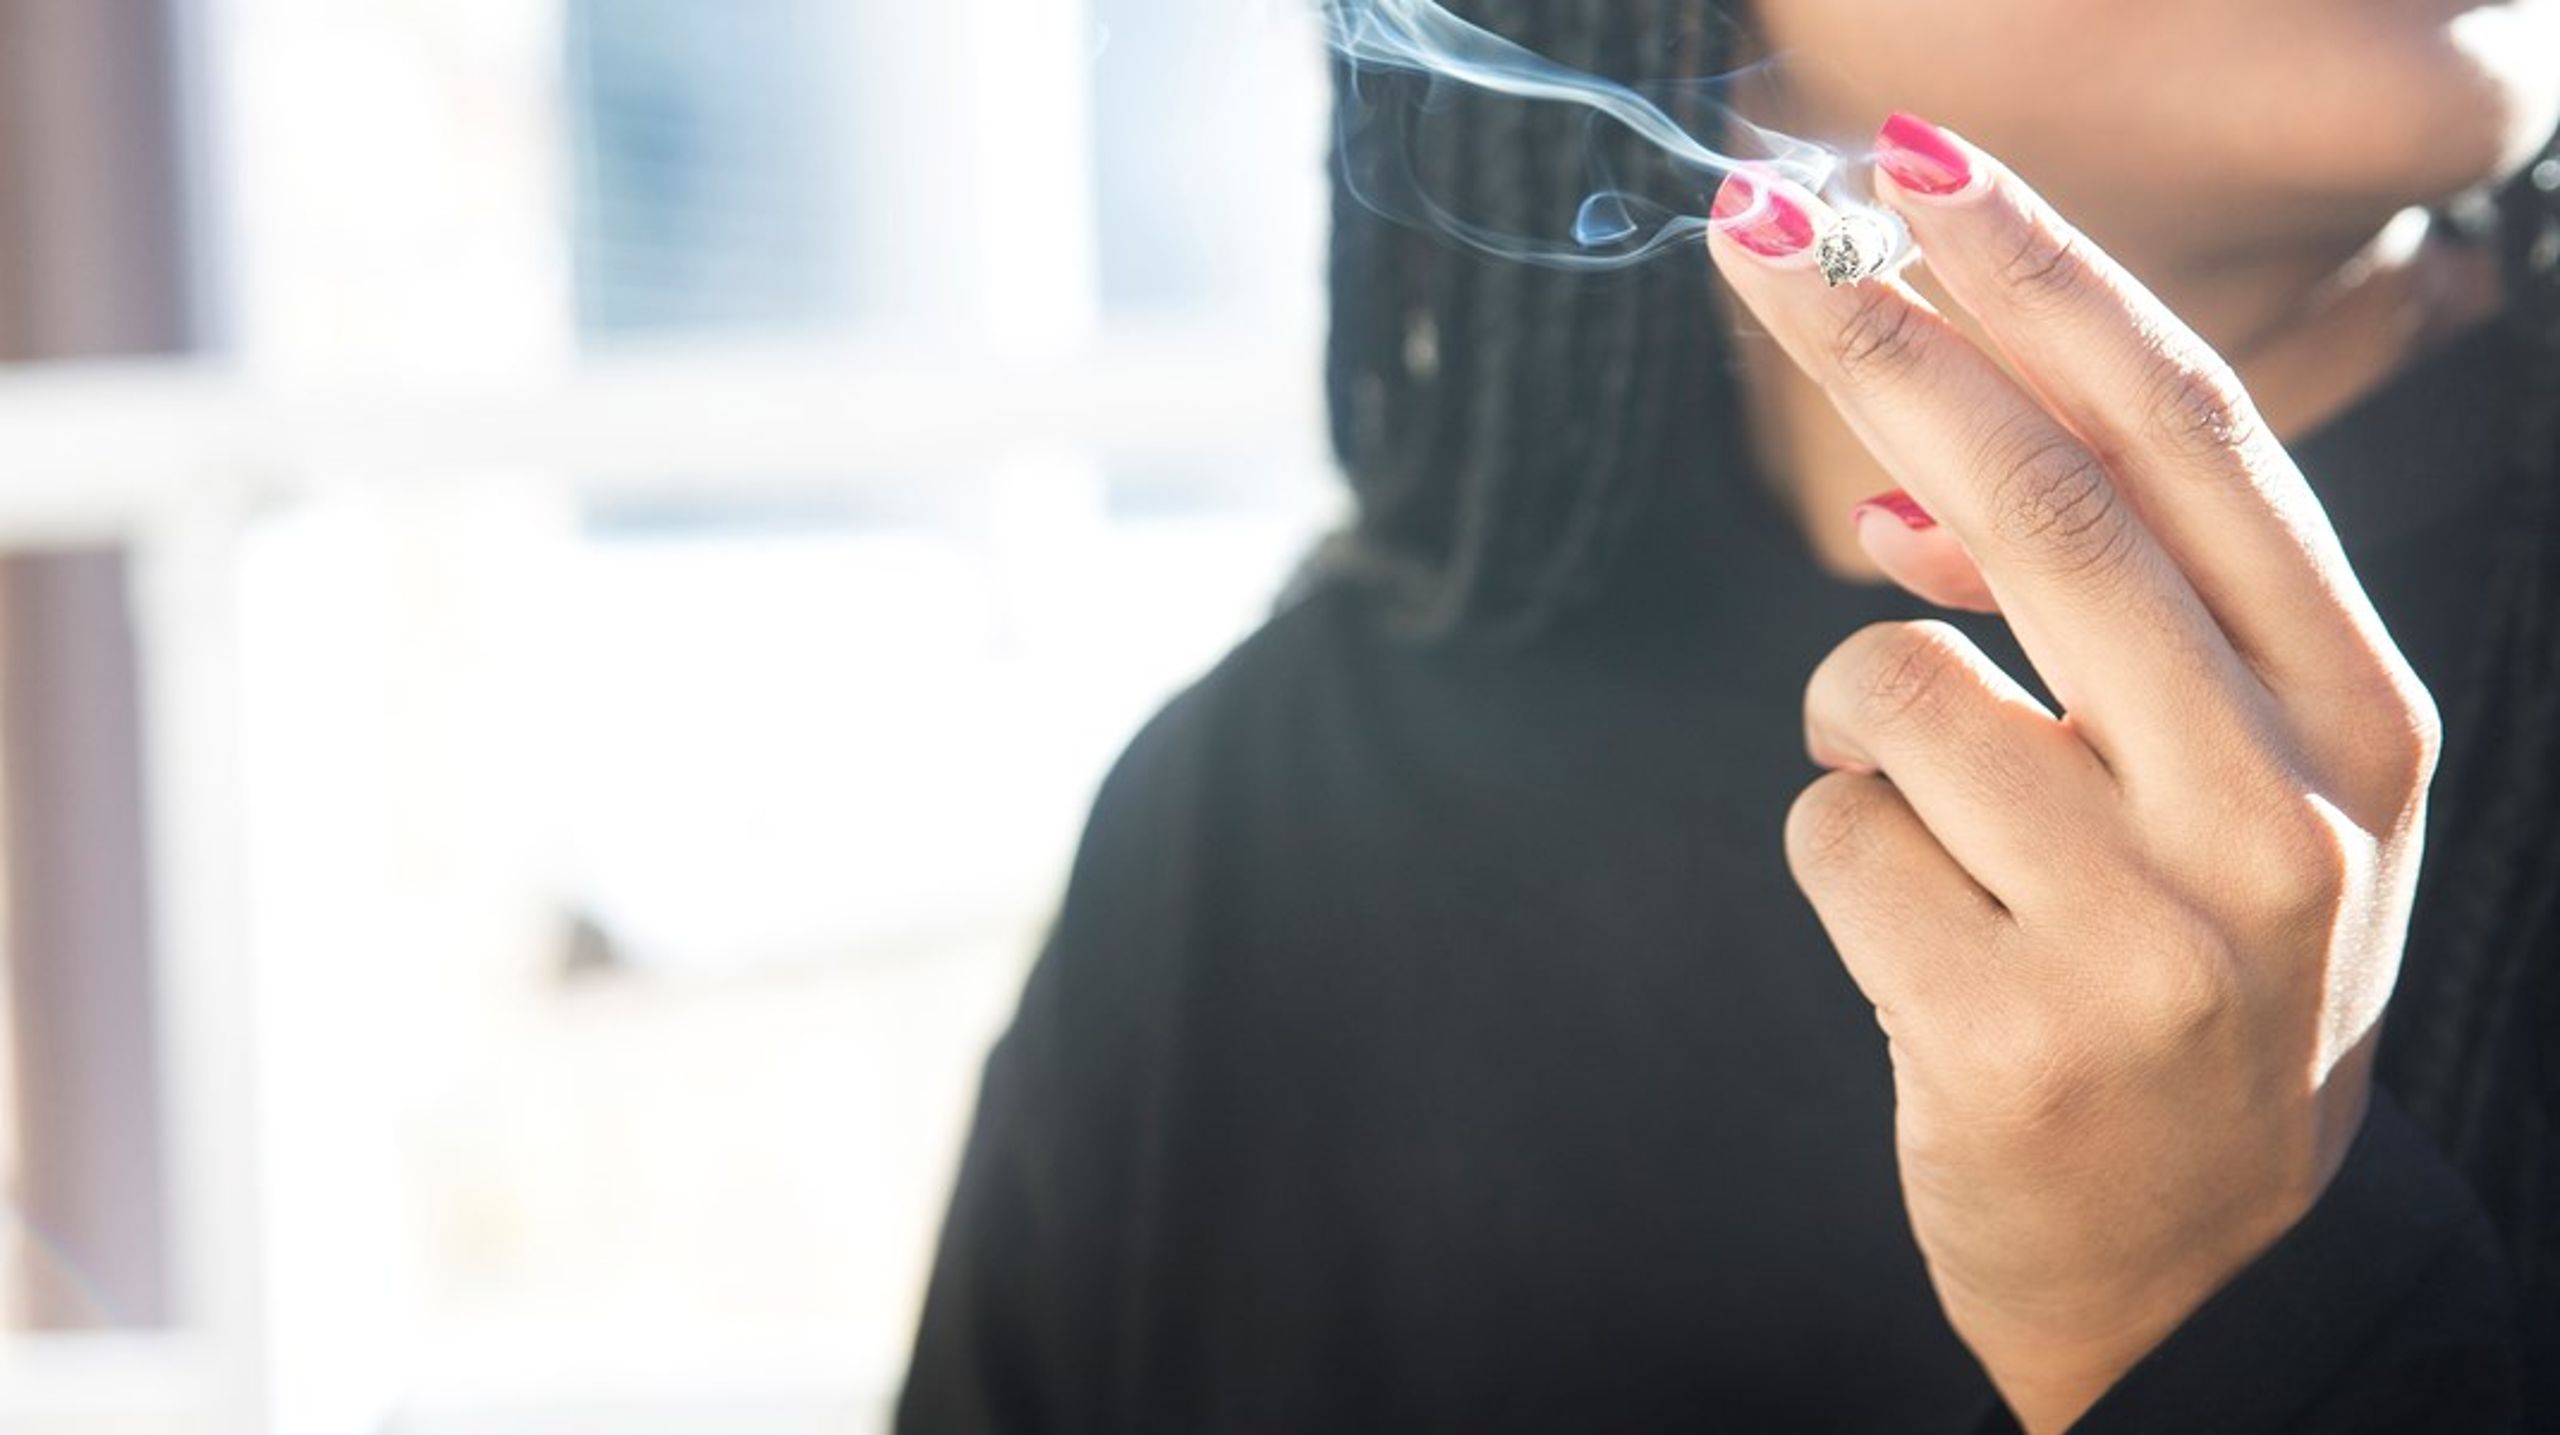 Det är tydligt att det inte finns riskfria tobaksprodukter. Men exempelvis är e-cigaretter 95% mindre skadliga än cigaretter. Självklart är det bättre för en rökare att byta från vanliga cigarretter till e-cigaretter, skriver debattörerna.